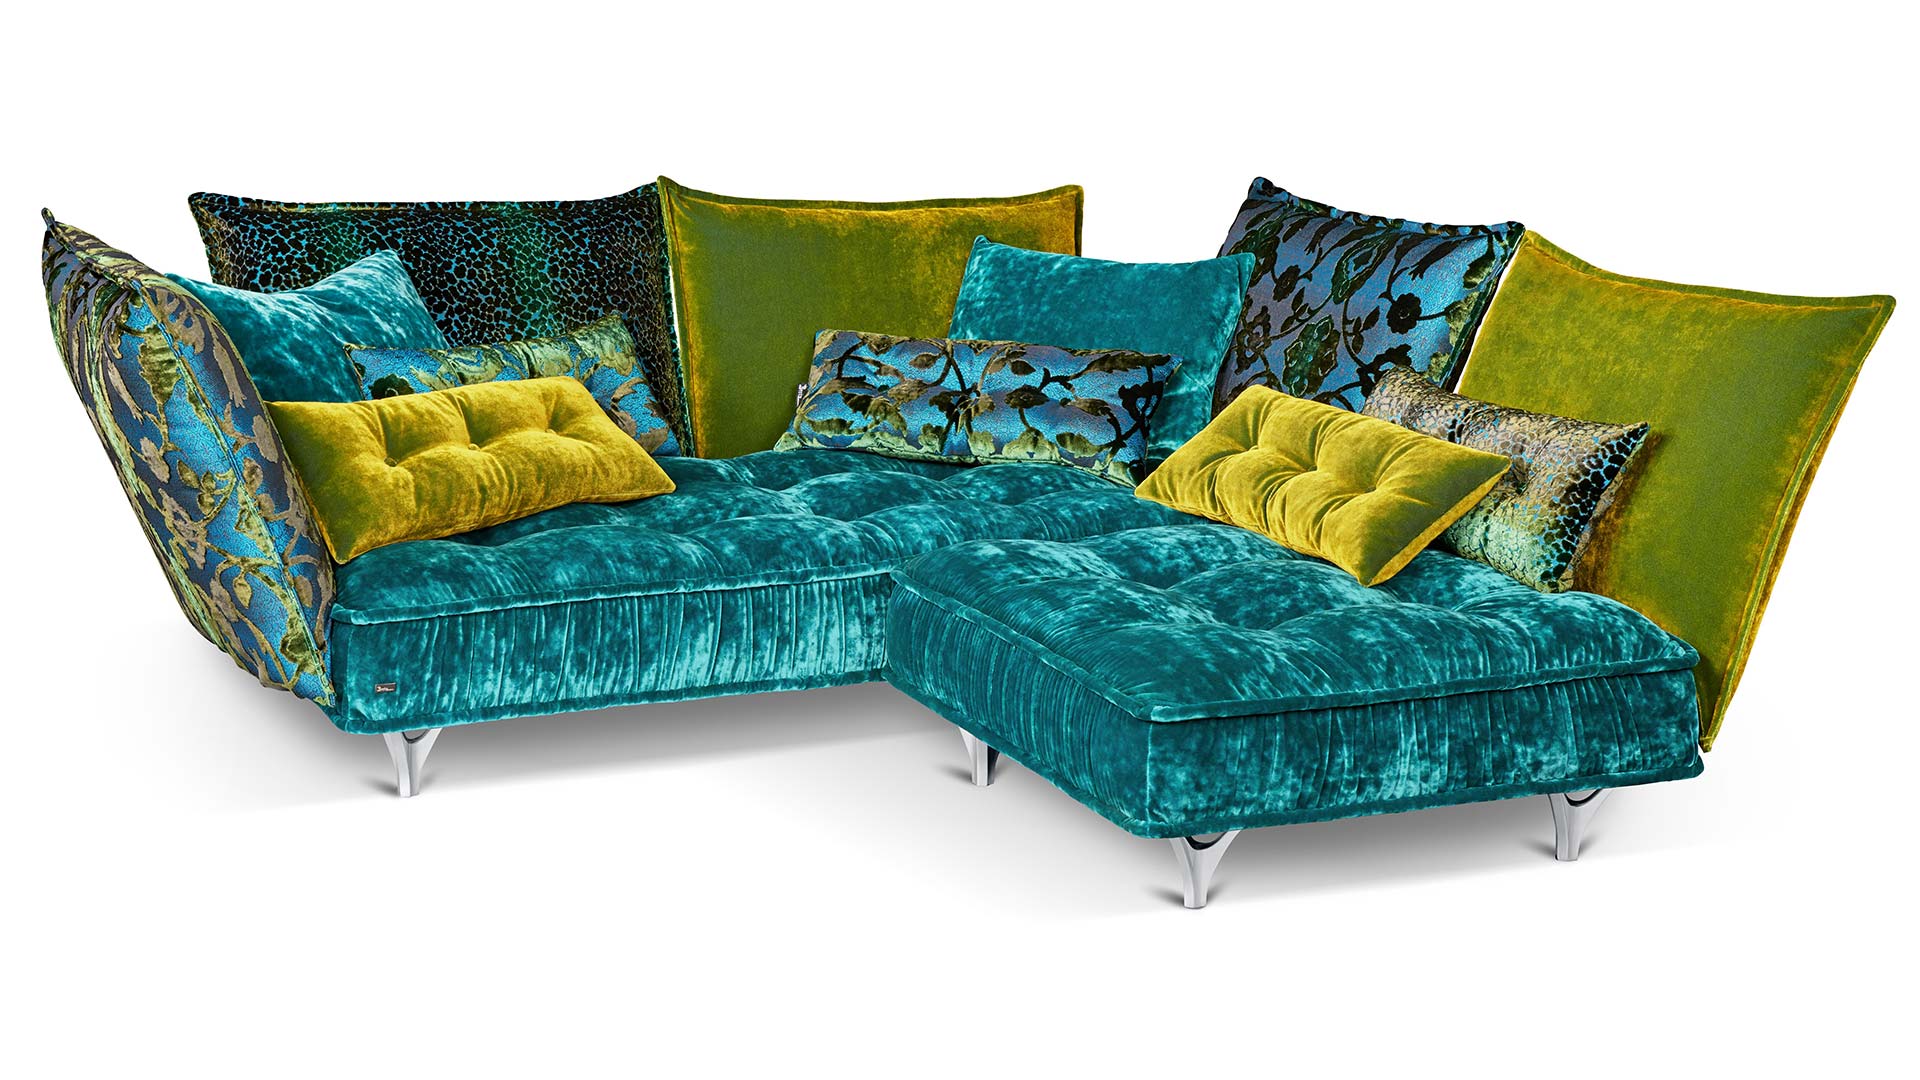 couchgarnitur-couch-sofa-bretz-stoff-velours-gruen-blau-tuerkis-gelb-gemustert-blumen-leo-gerafft-polstergarnitur-fuesse-metall-chrom